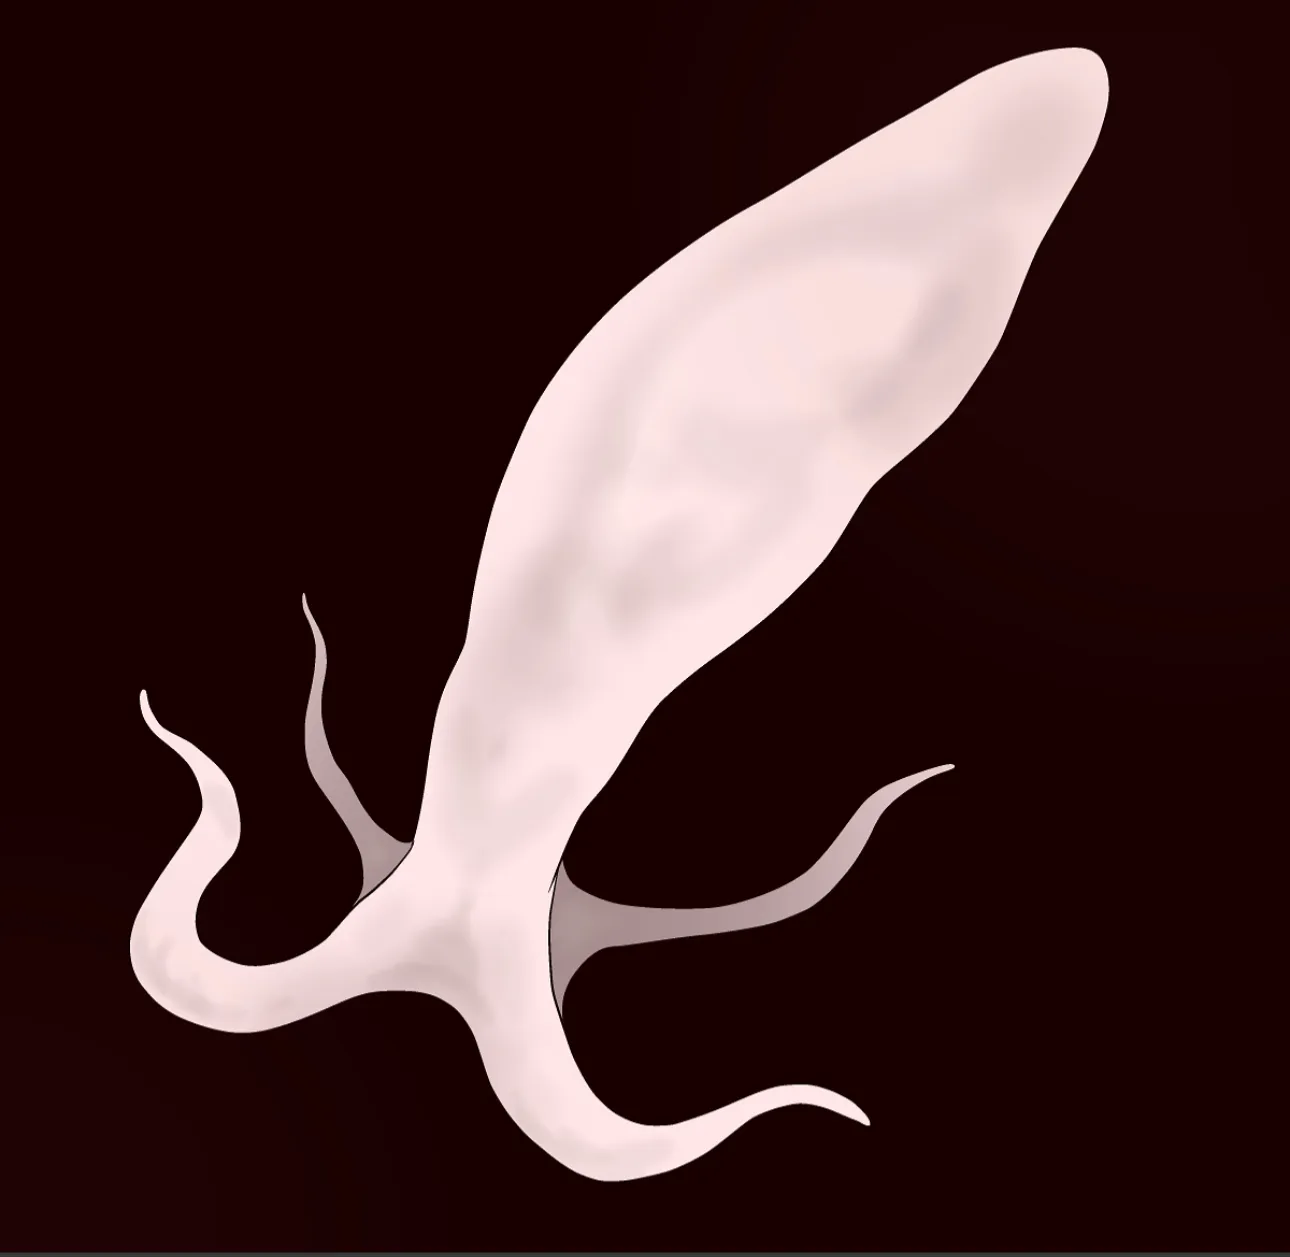 Avatar of Sperm Creature [Fem POV]